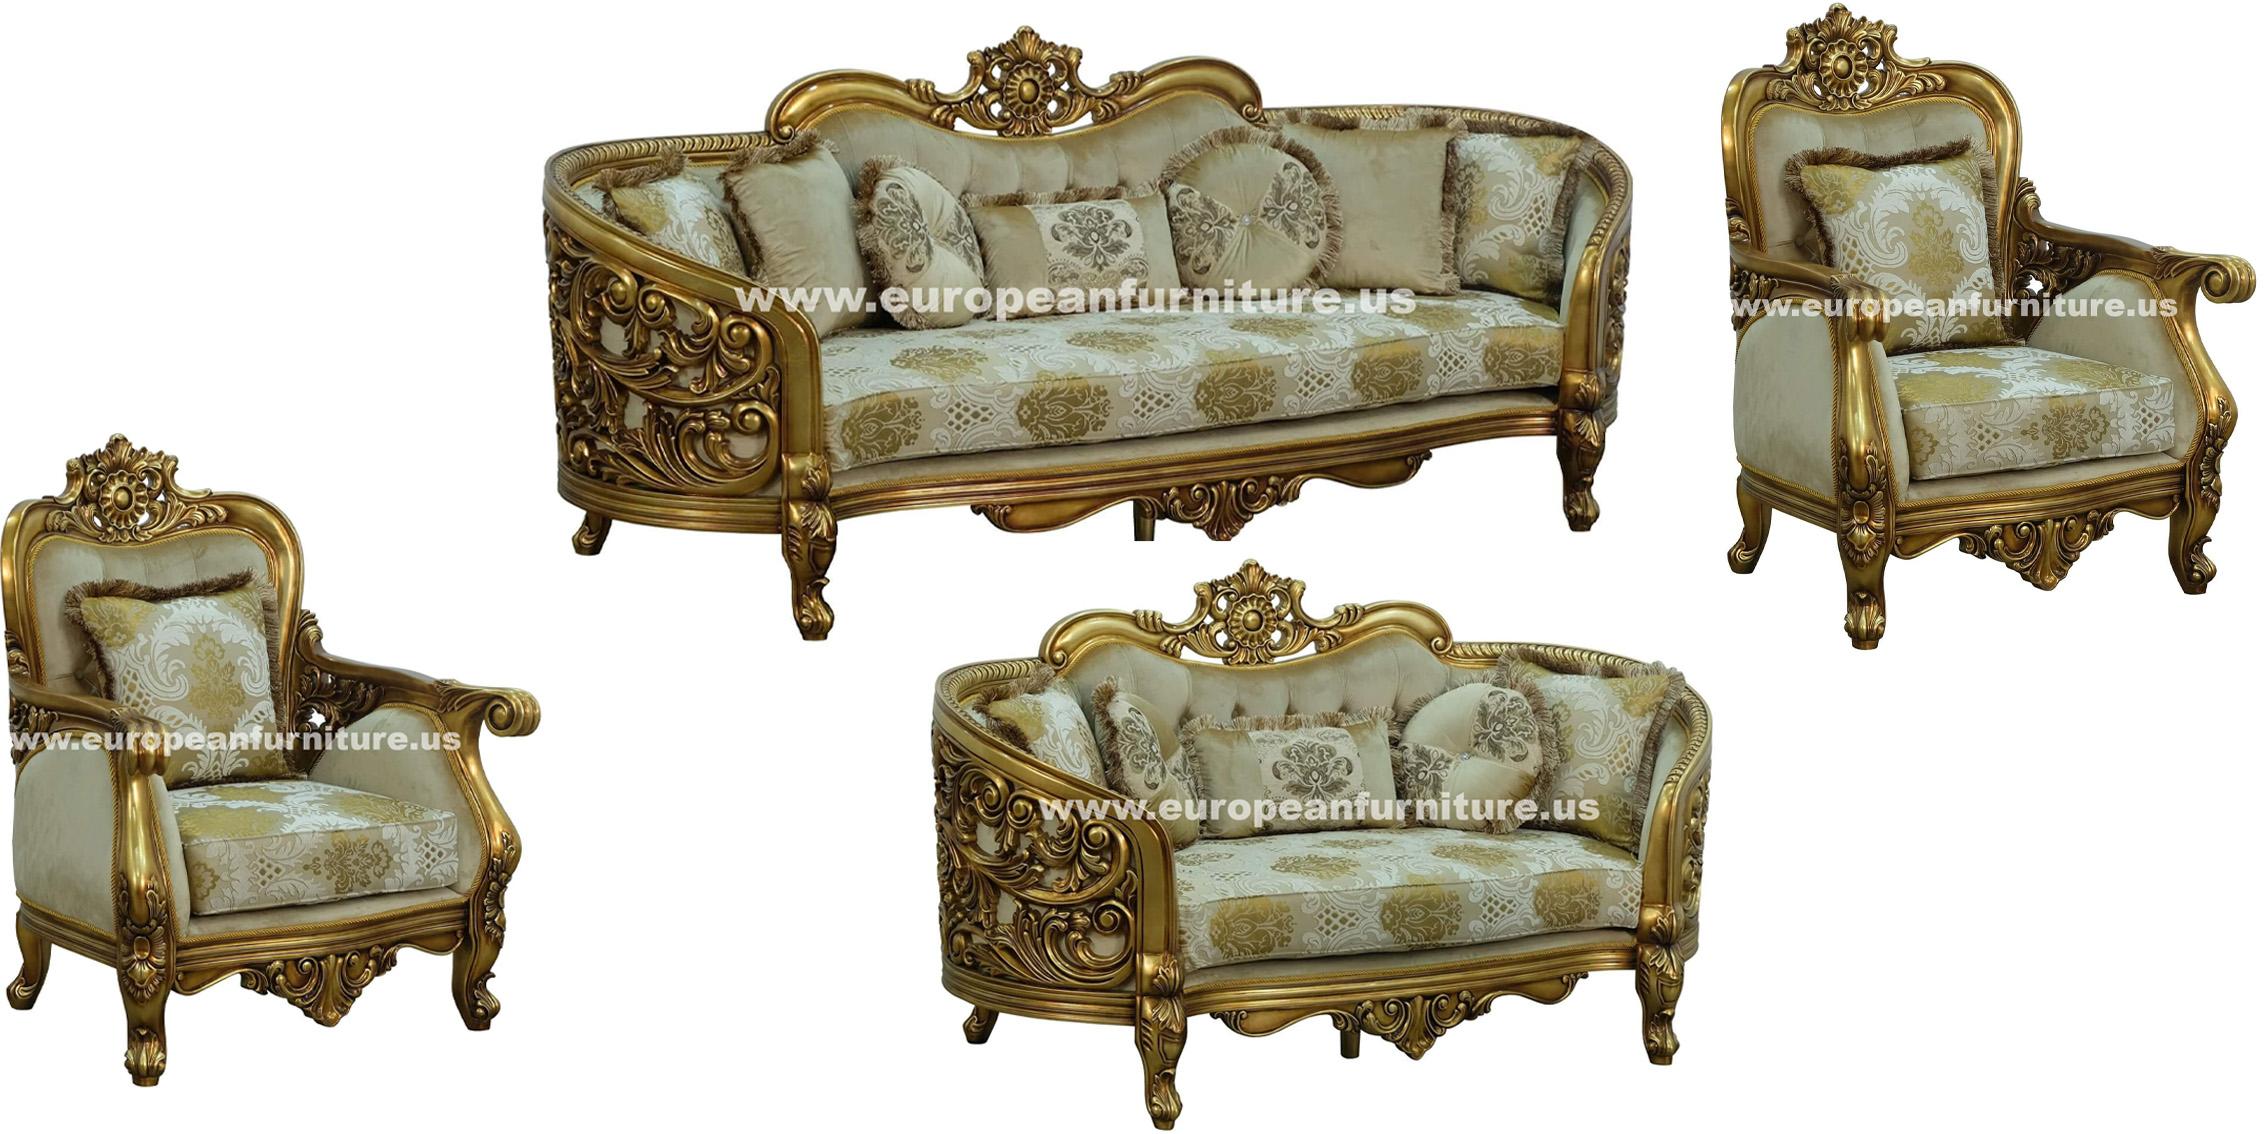 

    
Classic Antique Bronze Gold Fabric 30016 BELLAGIO Sofa Set 4Pcs EUROPEAN FURNITURE
